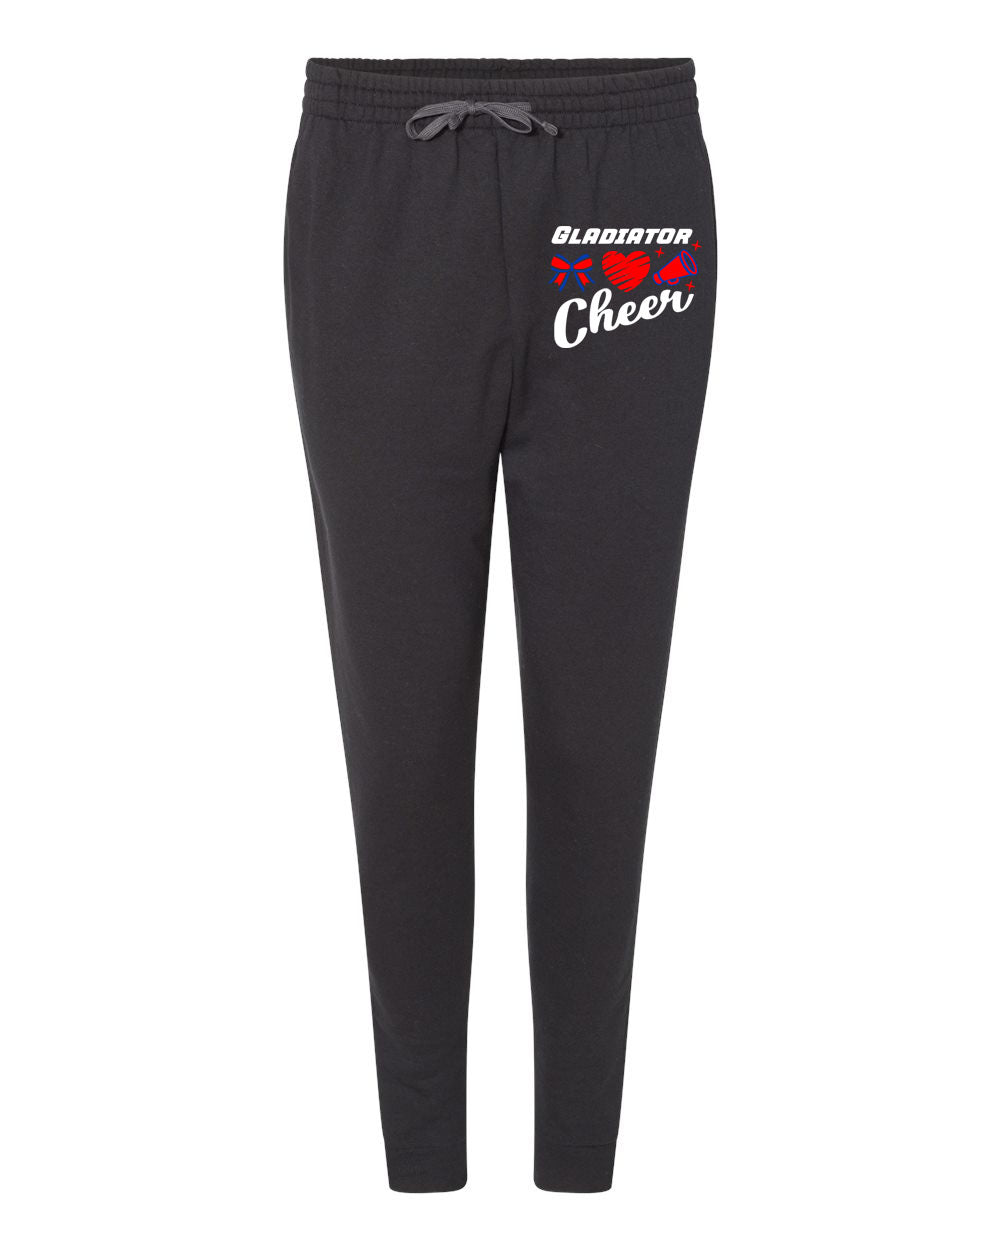 Goshen Cheer Design 9 Sweatpants